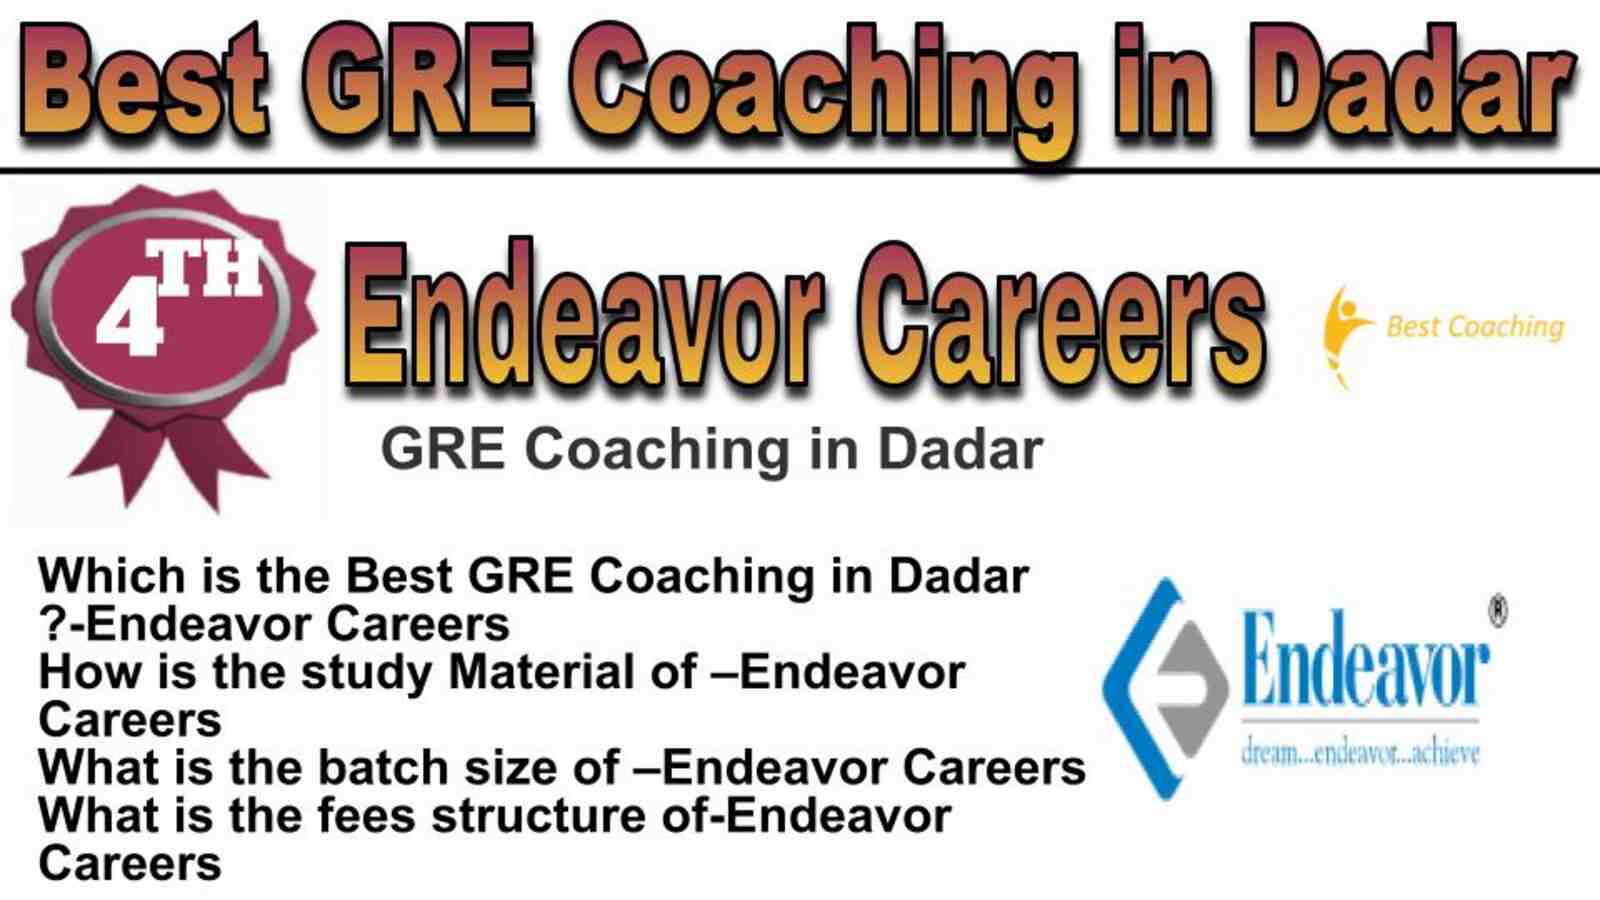 Rank 4 best GRE coaching in Dadar